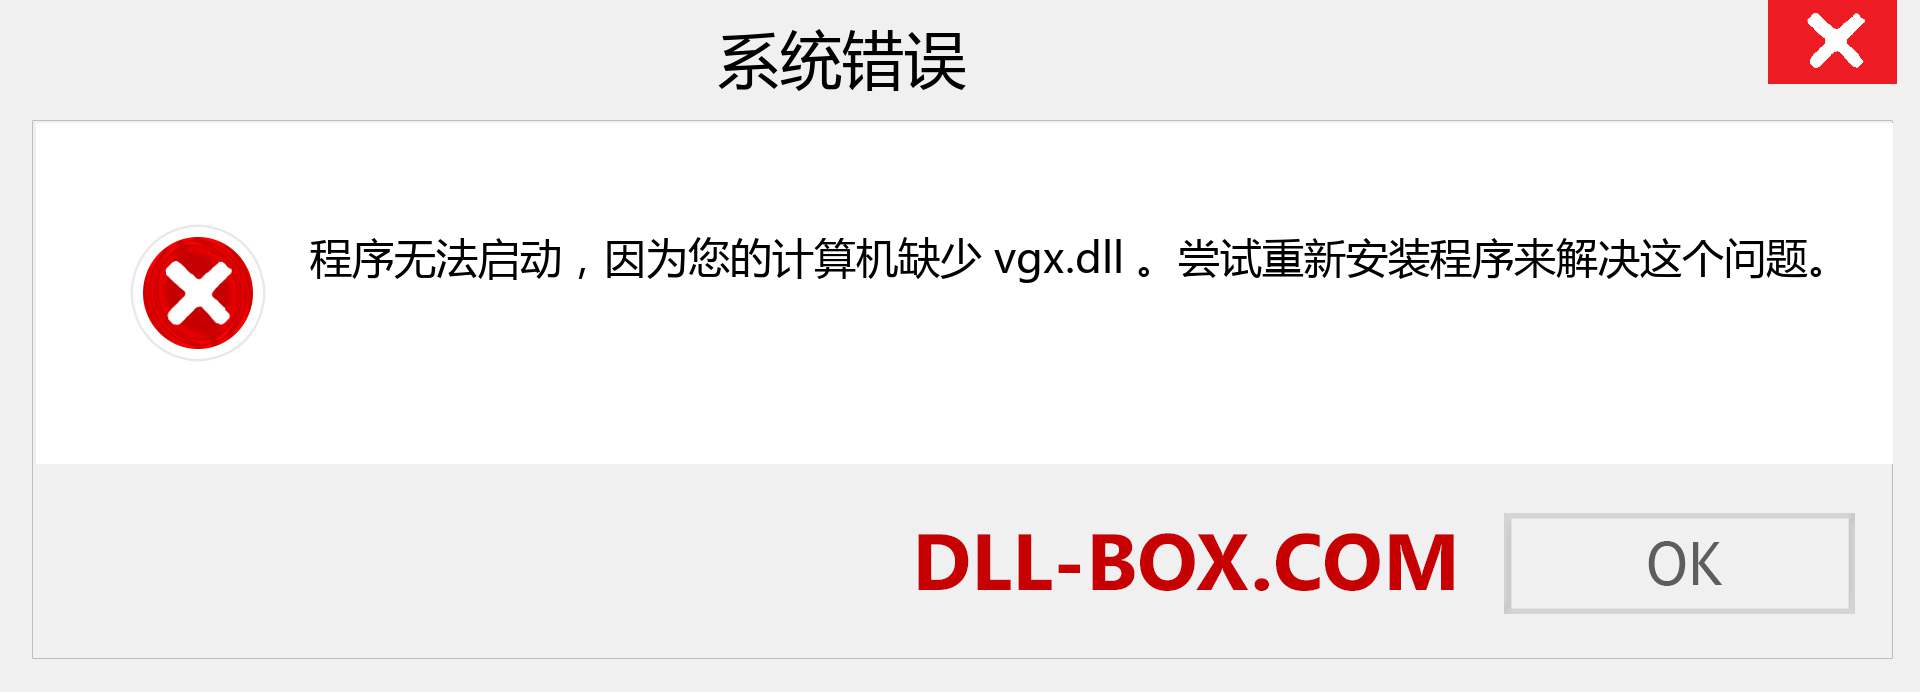 vgx.dll 文件丢失？。 适用于 Windows 7、8、10 的下载 - 修复 Windows、照片、图像上的 vgx dll 丢失错误